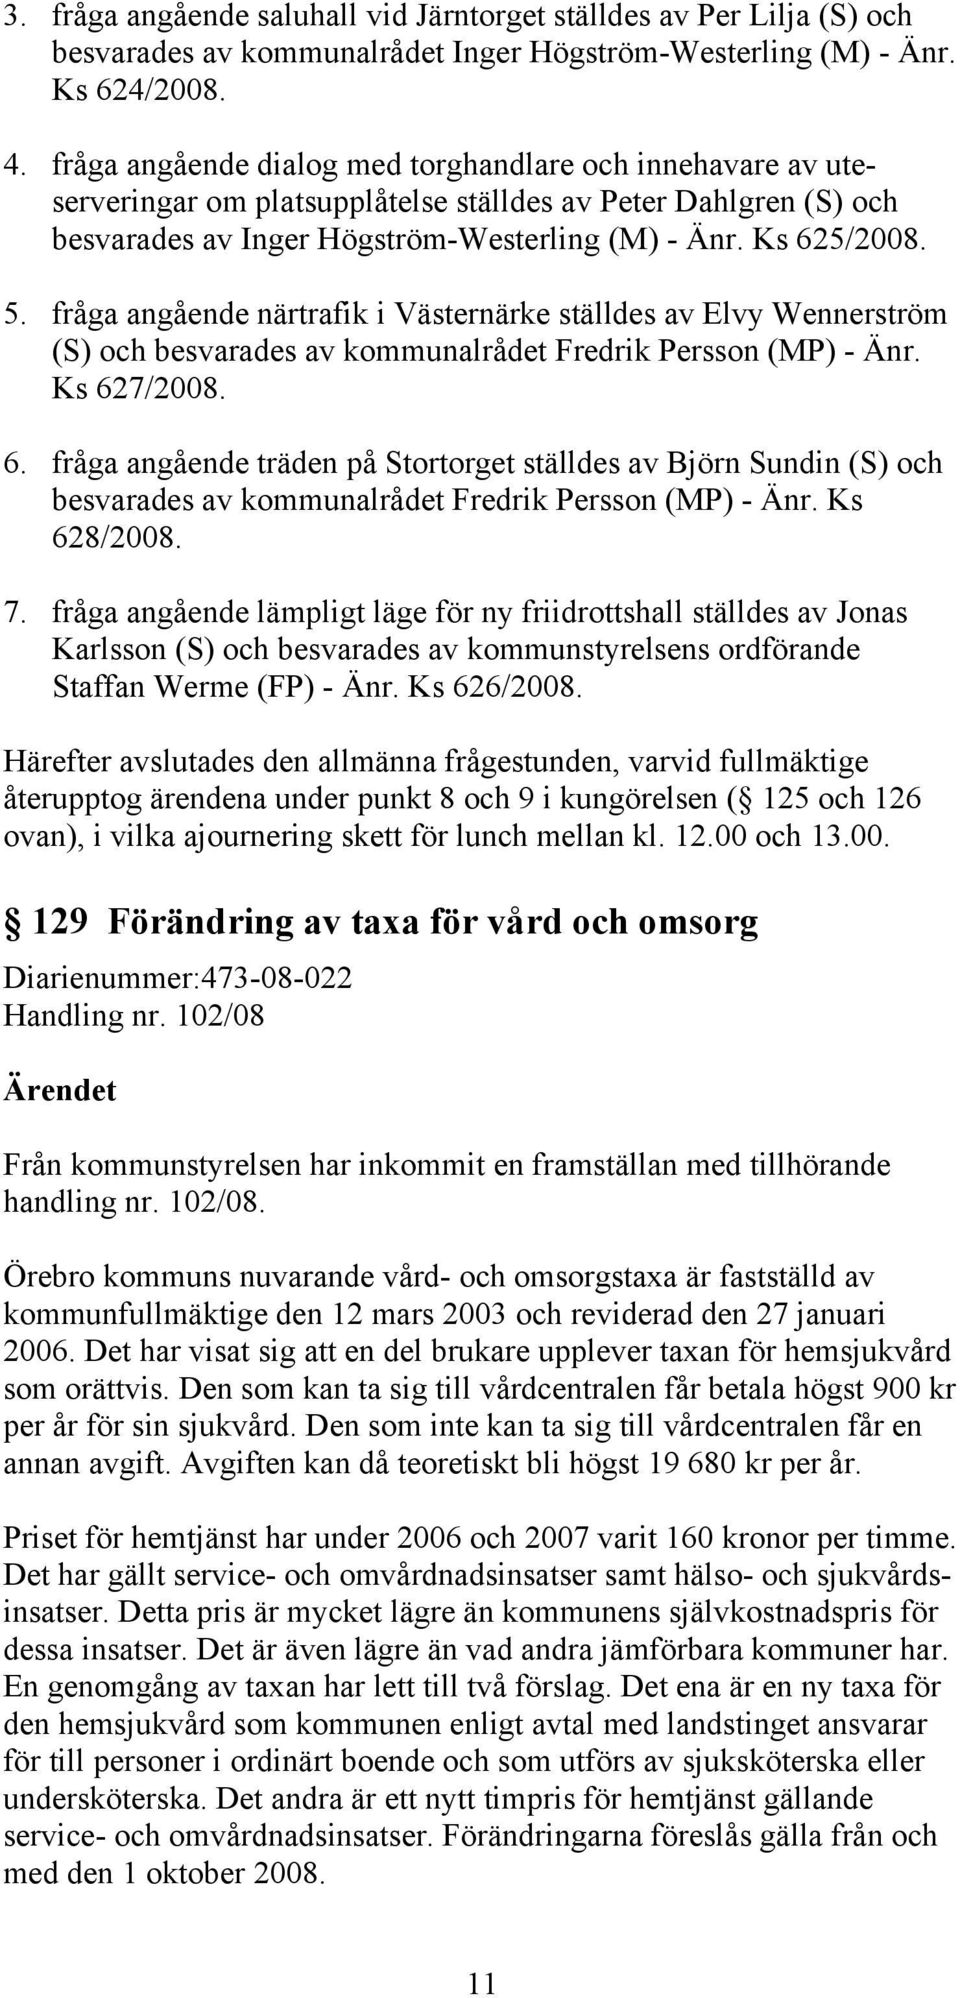 fråga angående närtrafik i Västernärke ställdes av Elvy Wennerström (S) och besvarades av kommunalrådet Fredrik Persson (MP) - Änr. Ks 62